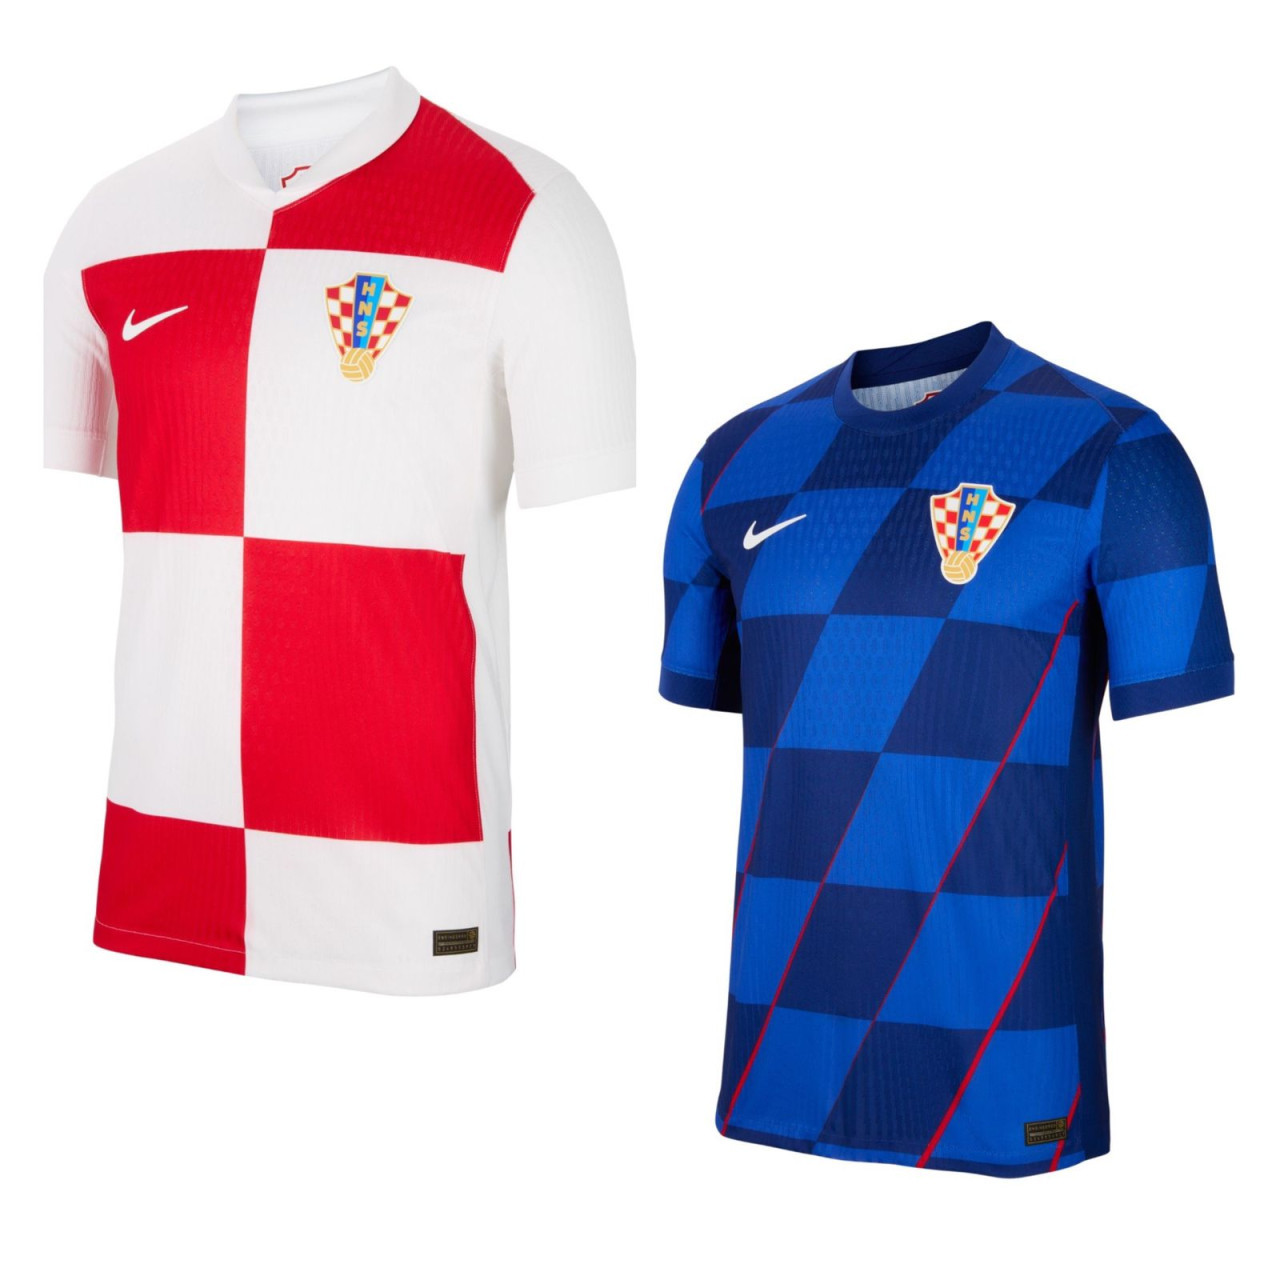 Camiseta titular y suplente de Croacia.